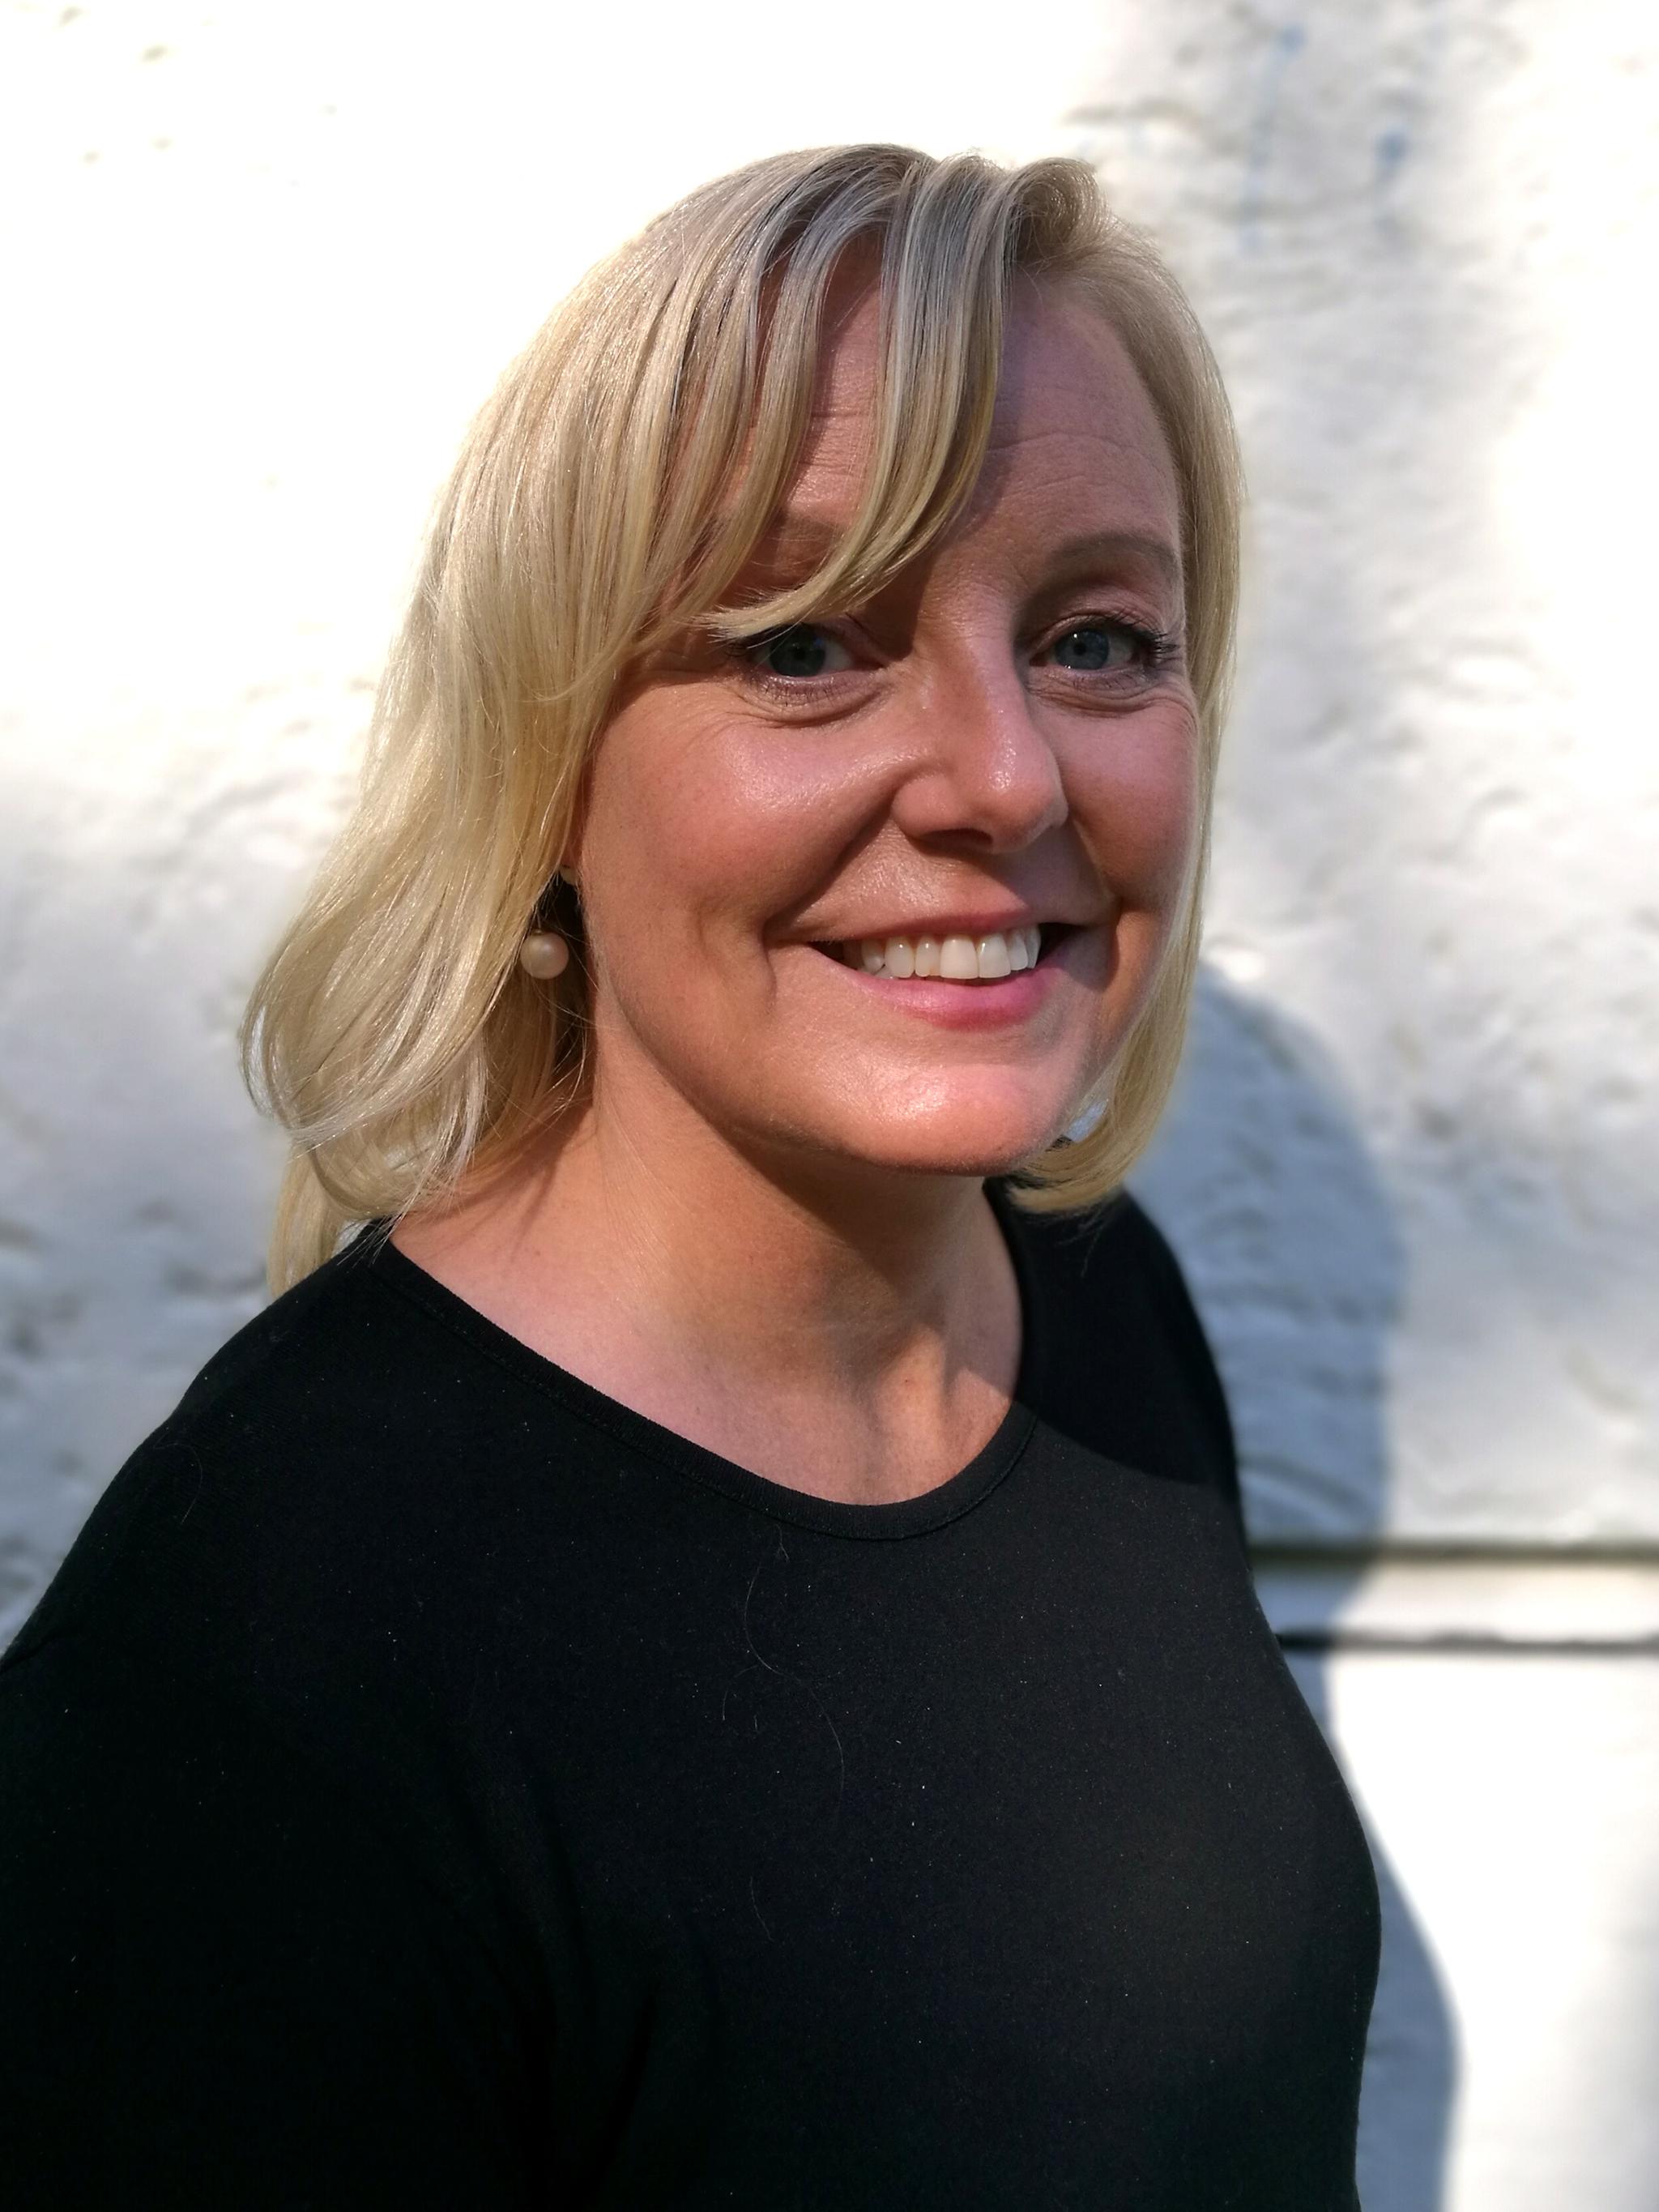 Fungerende rektor Kathrine Reine ved Holtet videregående skole i Oslo.